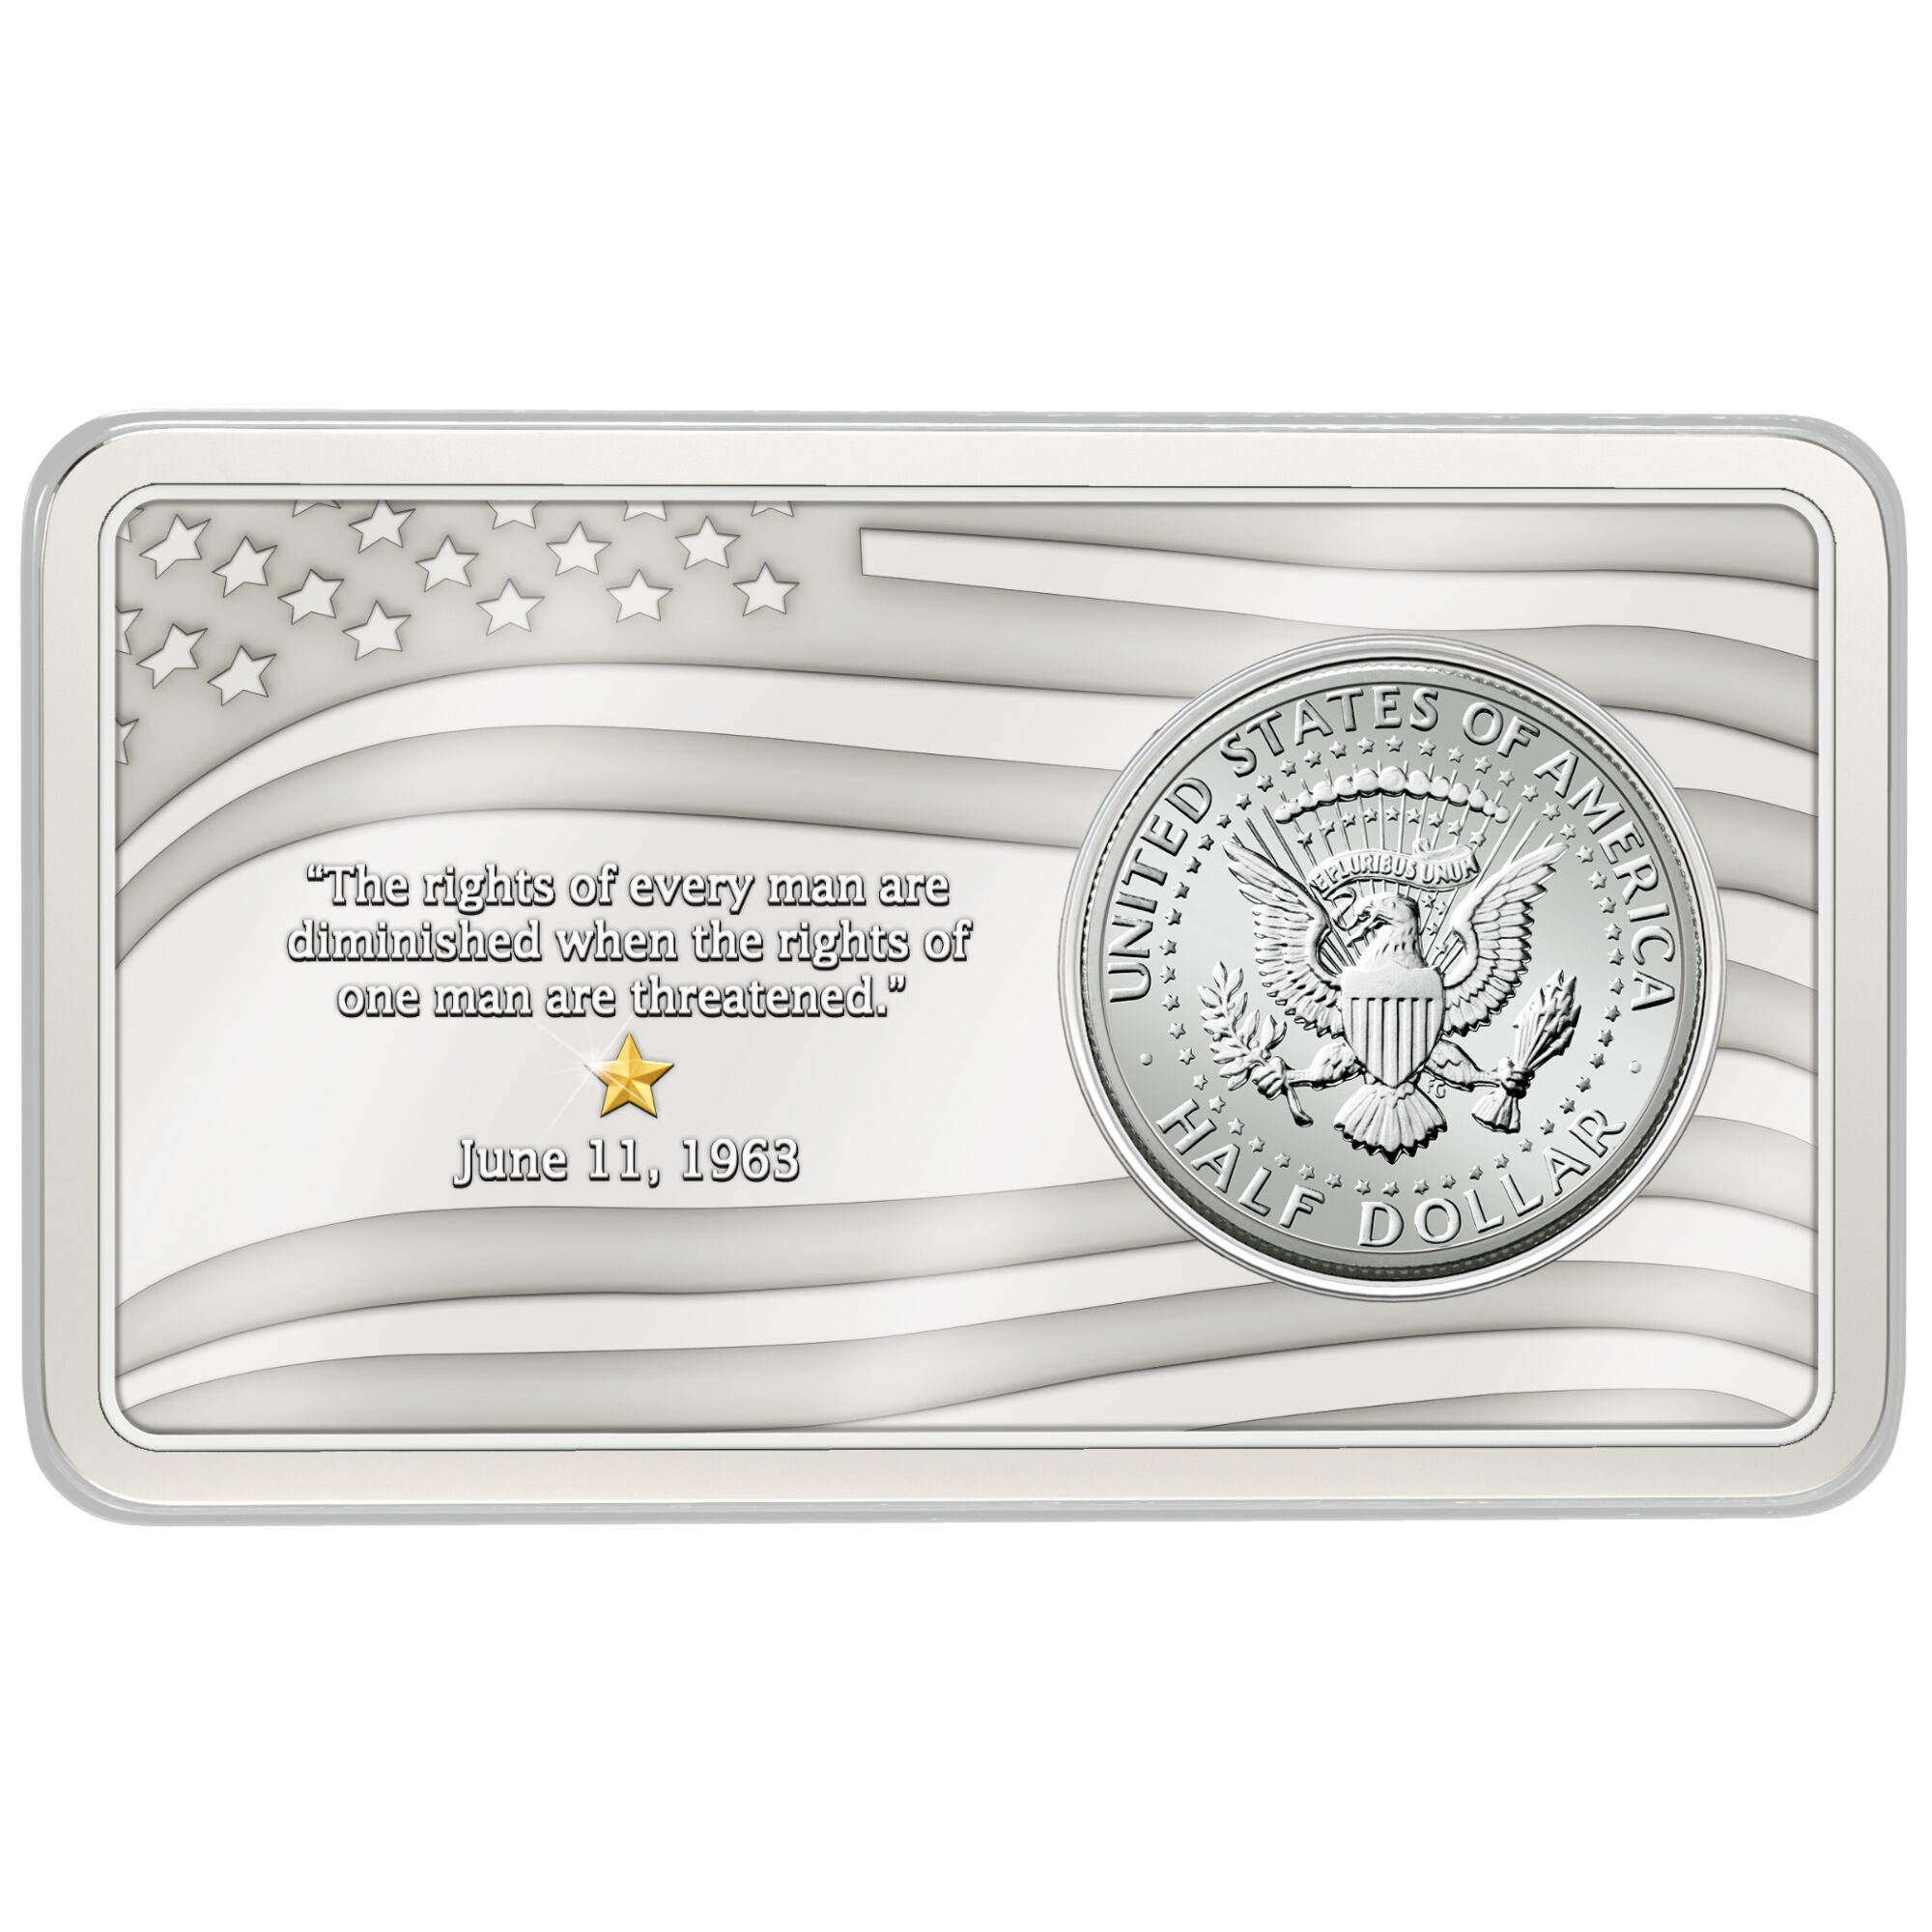 The Kennedy Silver Half Dollar Inaugural Year Mint Mark Set 10646 0017 c ingot